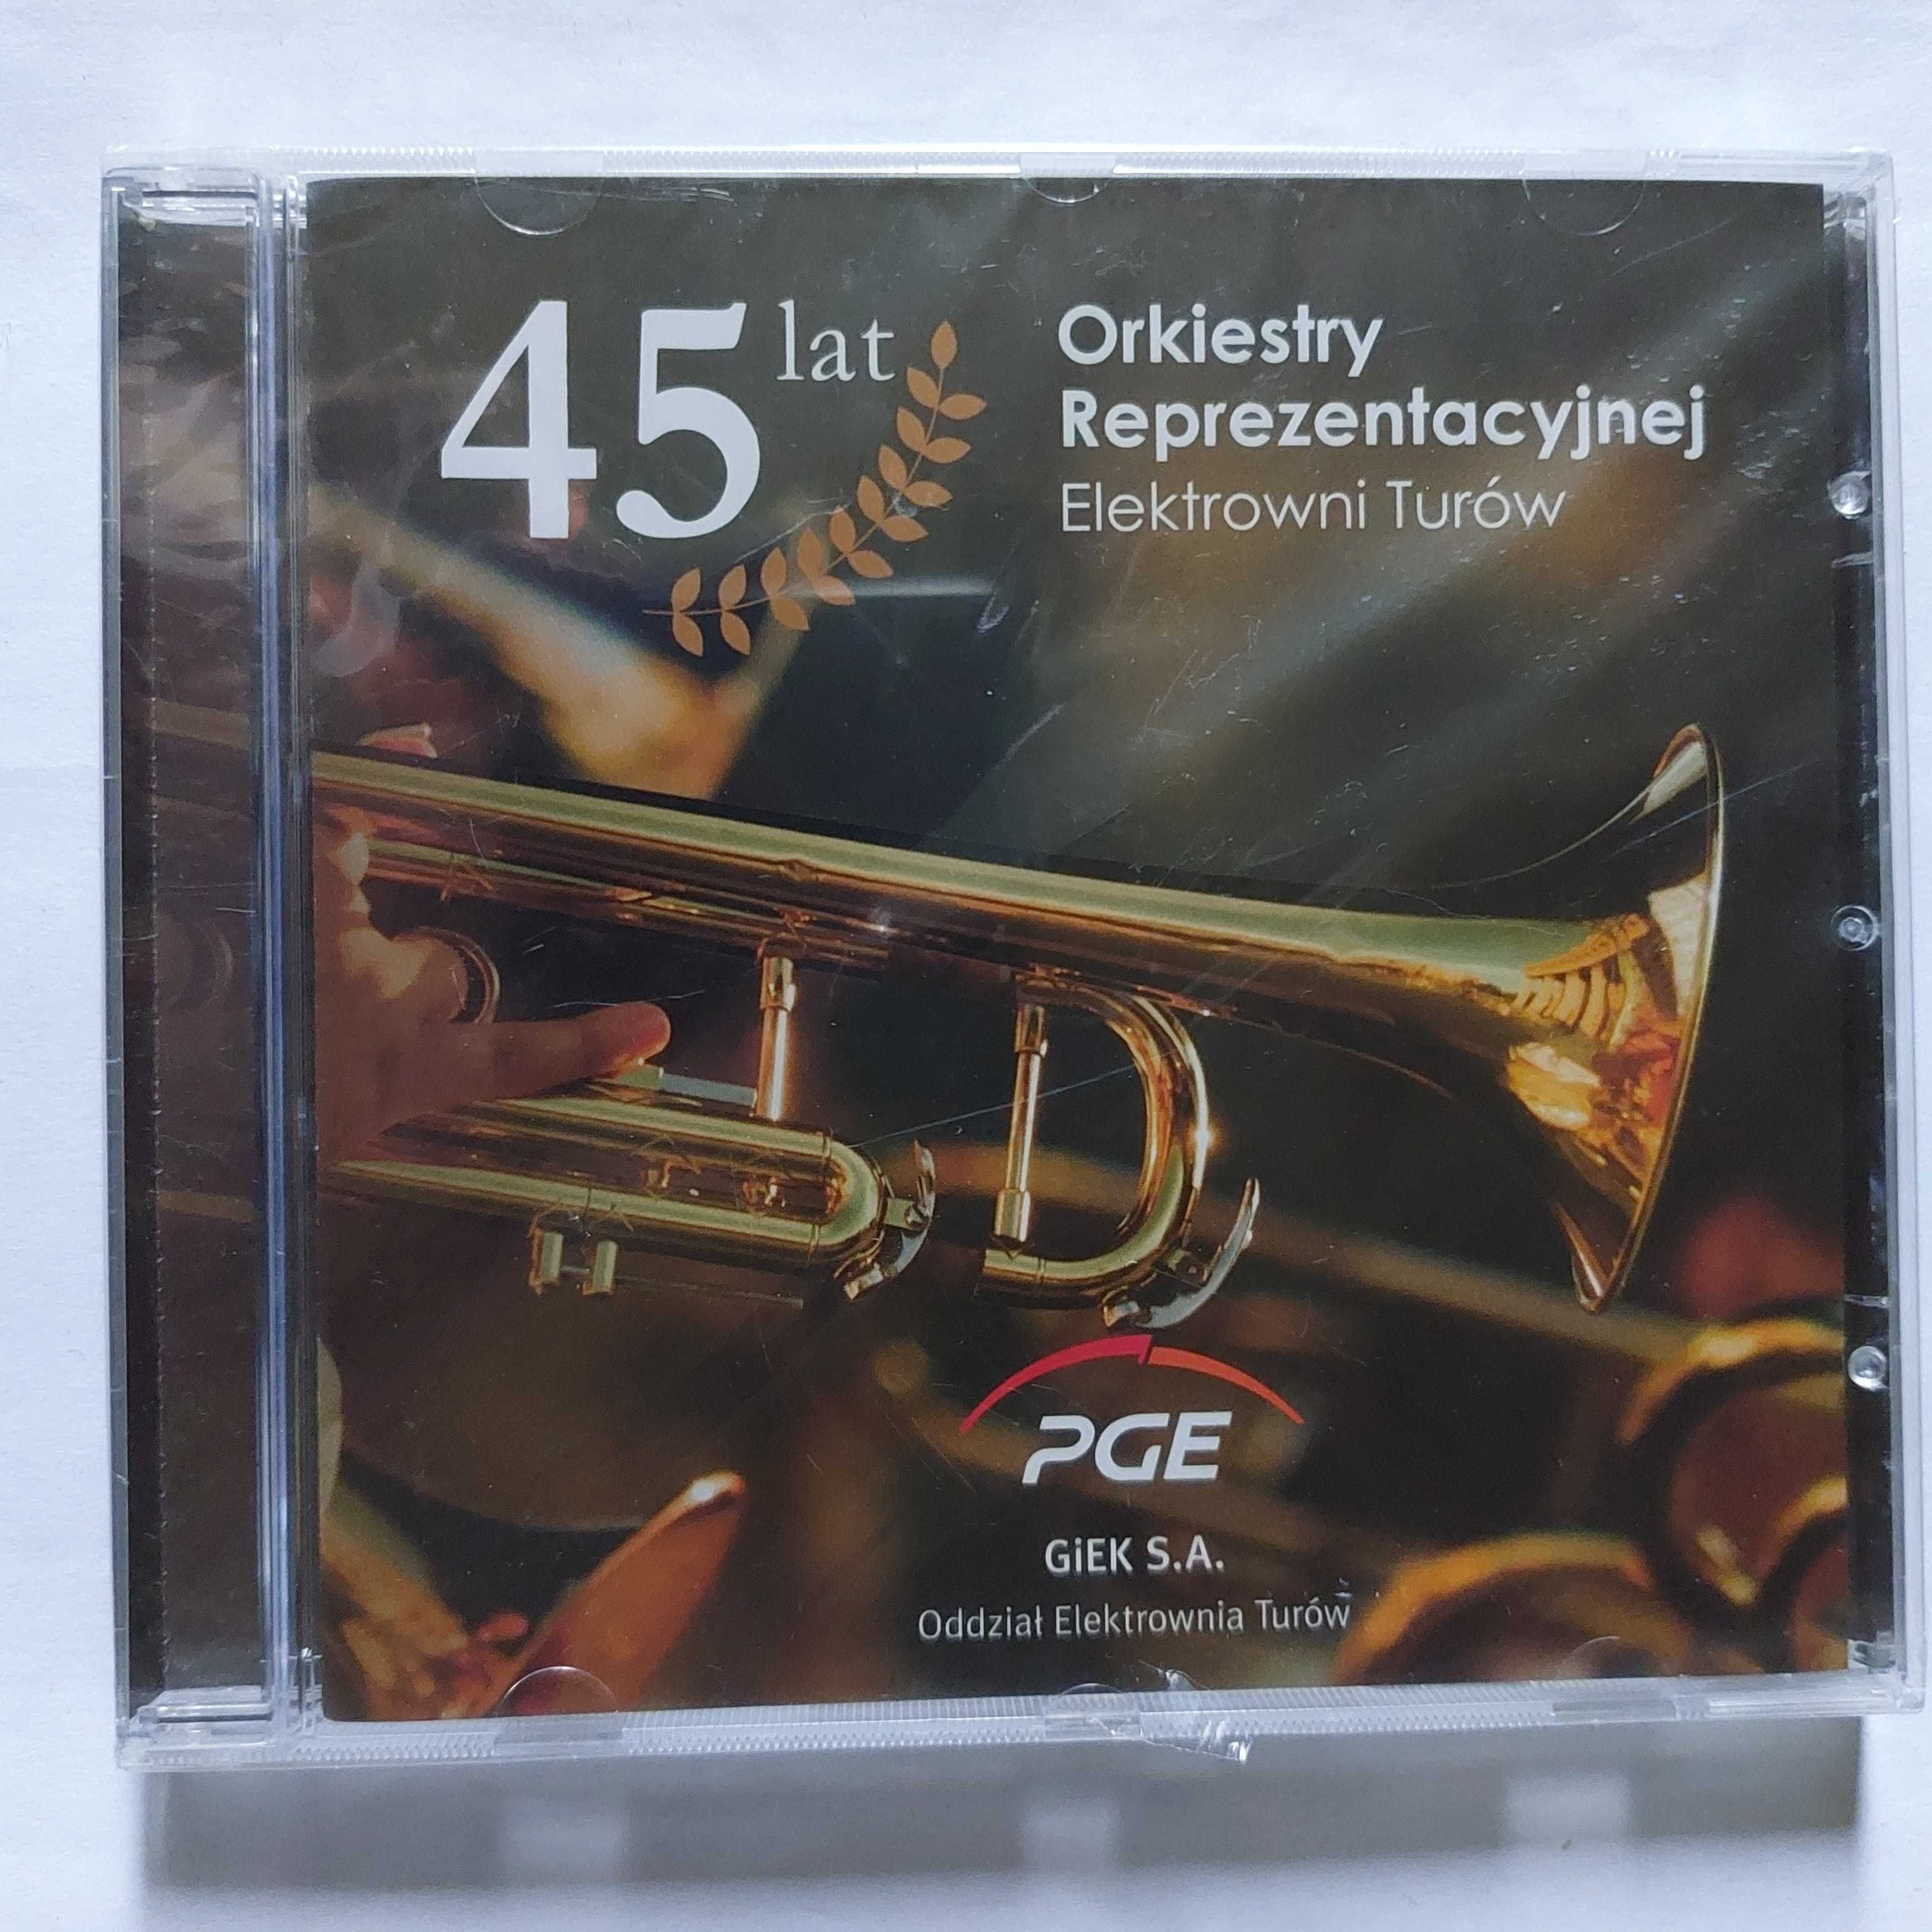 45 lat orkiestry reprezentacyjnej elektrowni TURÓW | płyta CD z muzyką